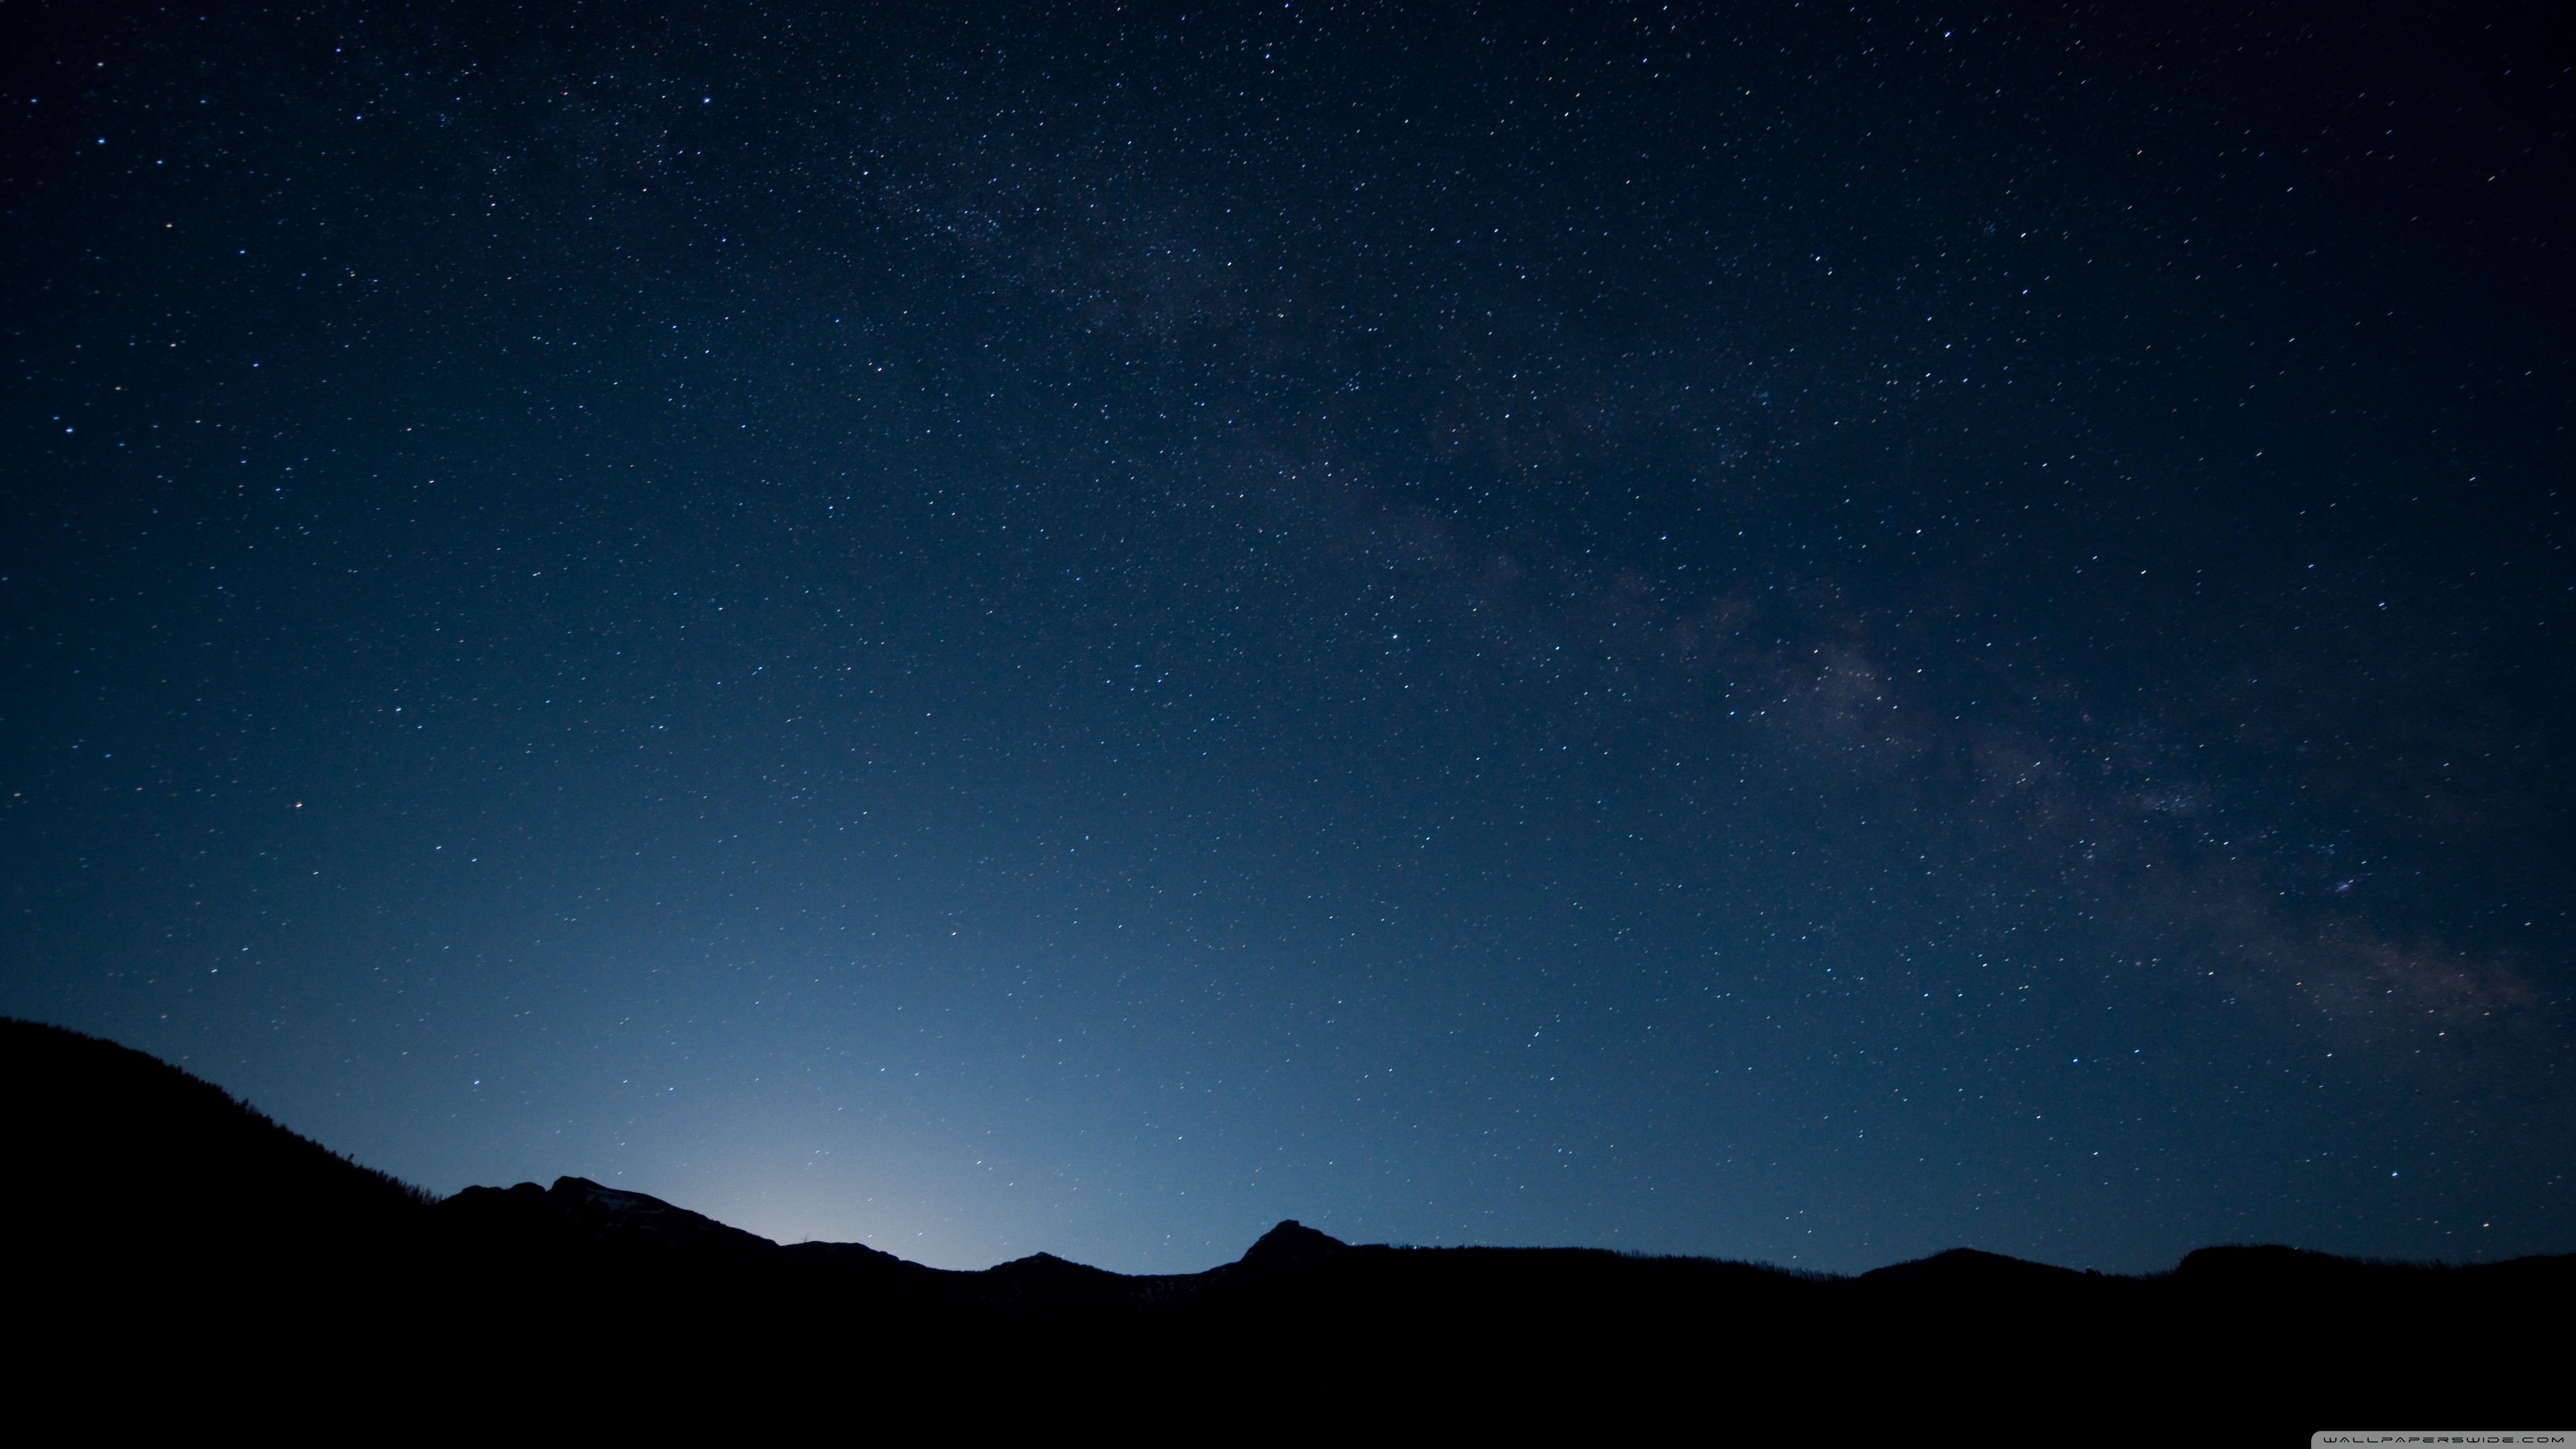 Với hình nền Night Sky Wallpaper 4K, bạn sẽ có thể chiêm ngưỡng ánh sáng của những ngôi sao và các vật thể vũ trụ đẹp nhất trong đêm. Độ sắc nét tuyệt đối của ảnh màu đen và trắng này sẽ tạo ra một bầu không khí yên tĩnh và lãng mạn cho bất cứ ai.